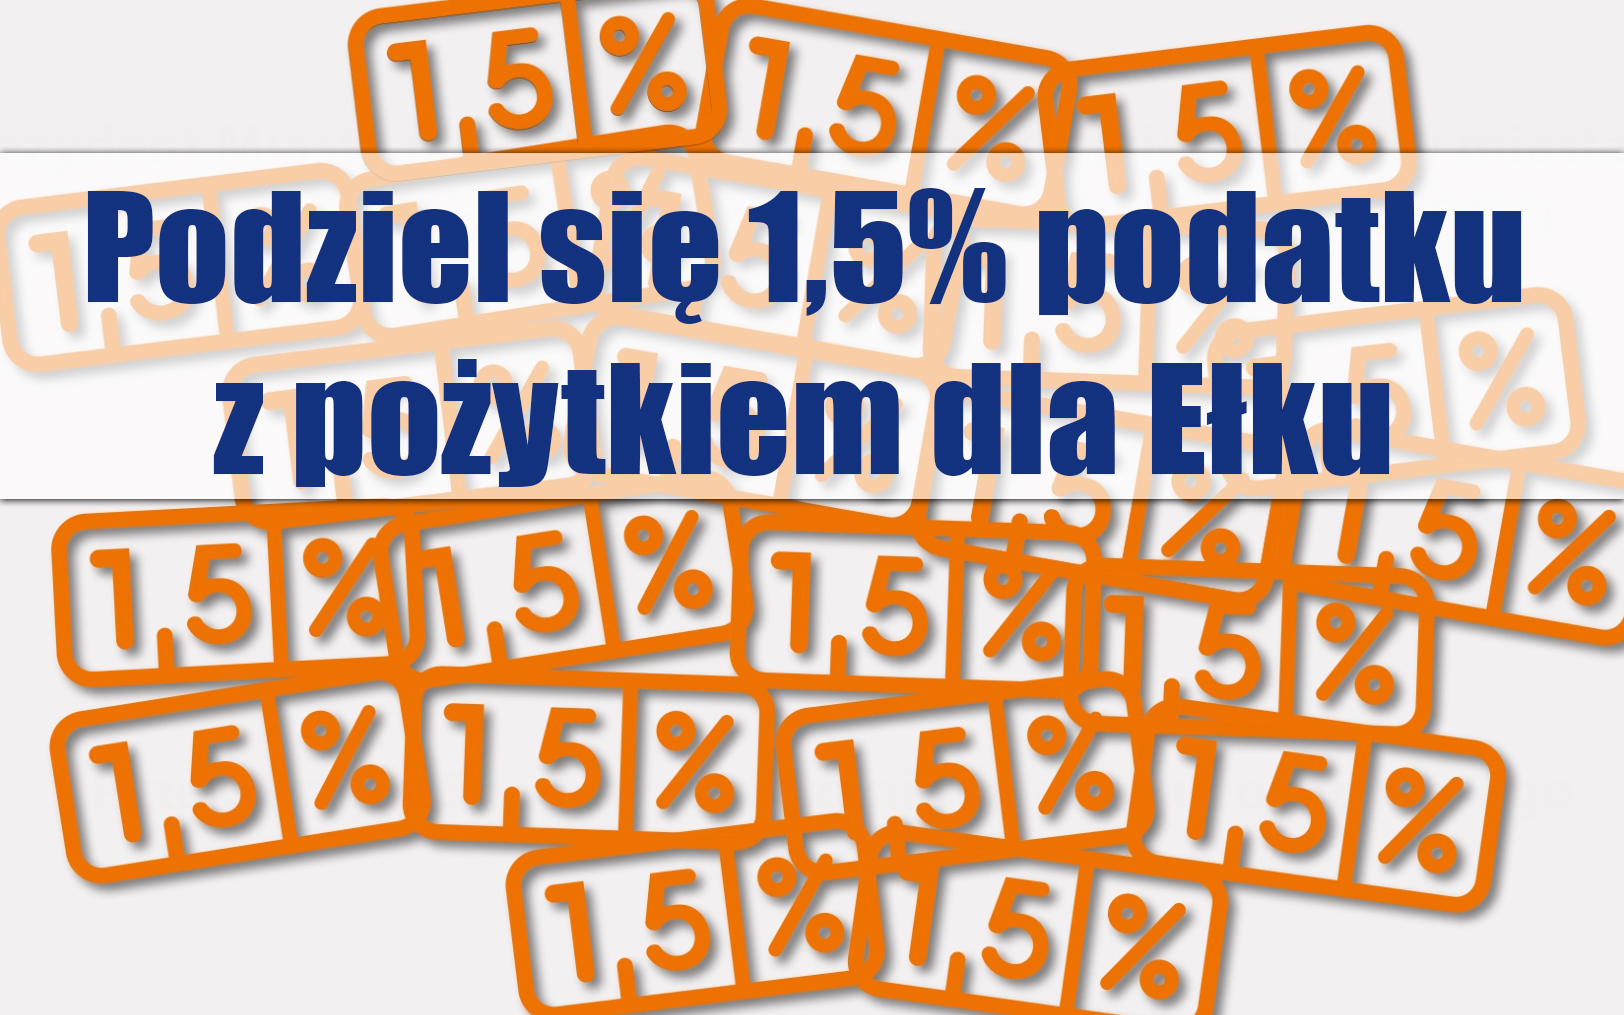 1,5% podatku z pożytkiem dla Ełku